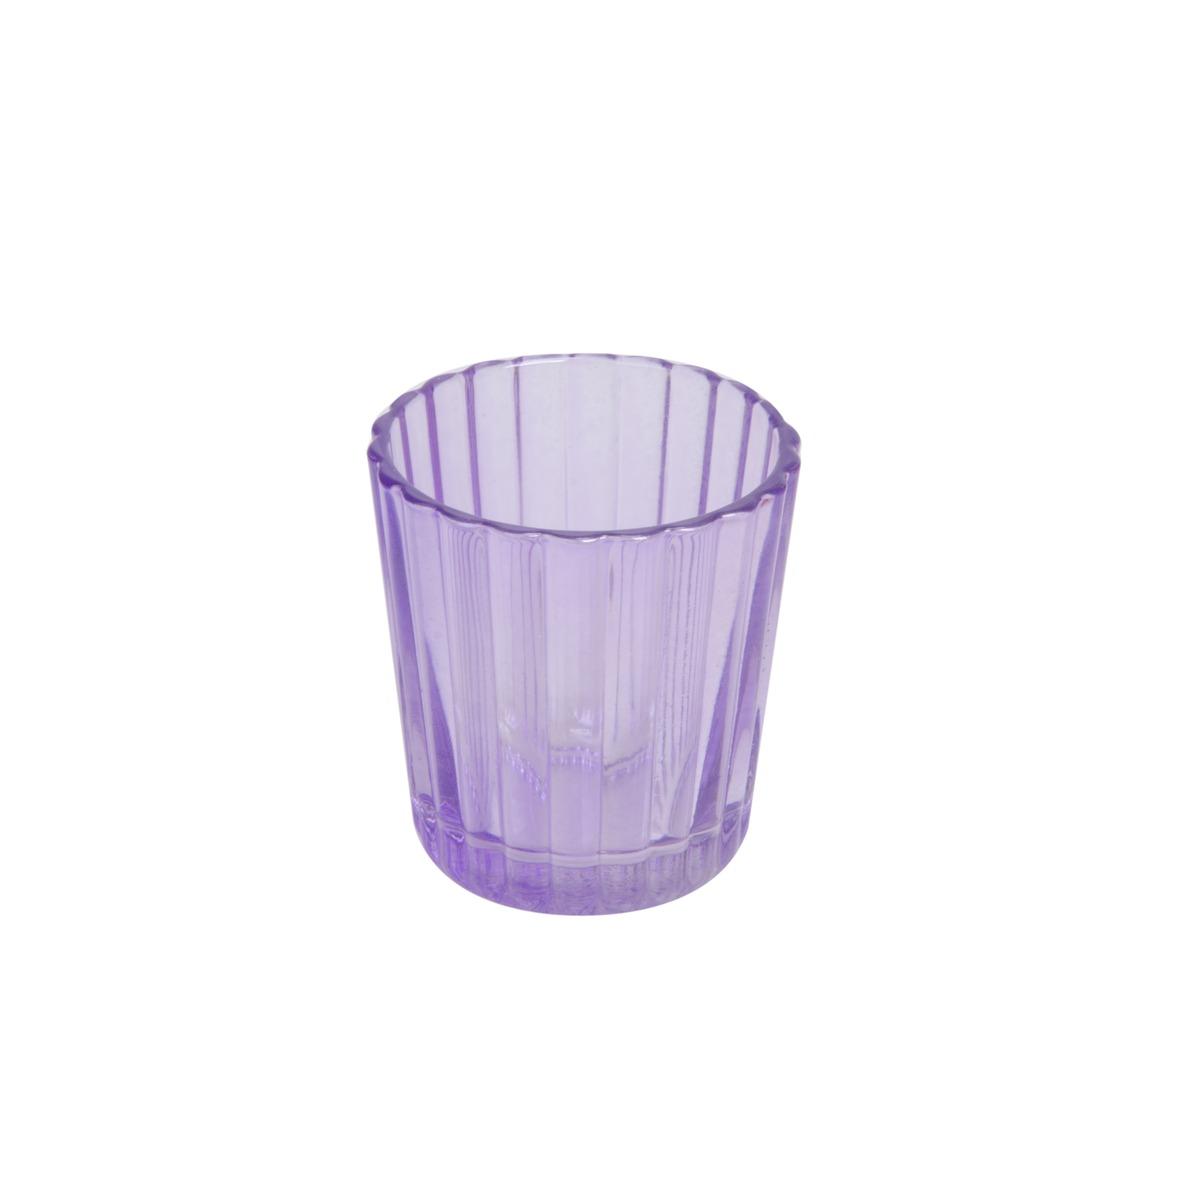 Photophore en verre - Diamètre 5,5 cm - Hauteur 6 cm - Violet